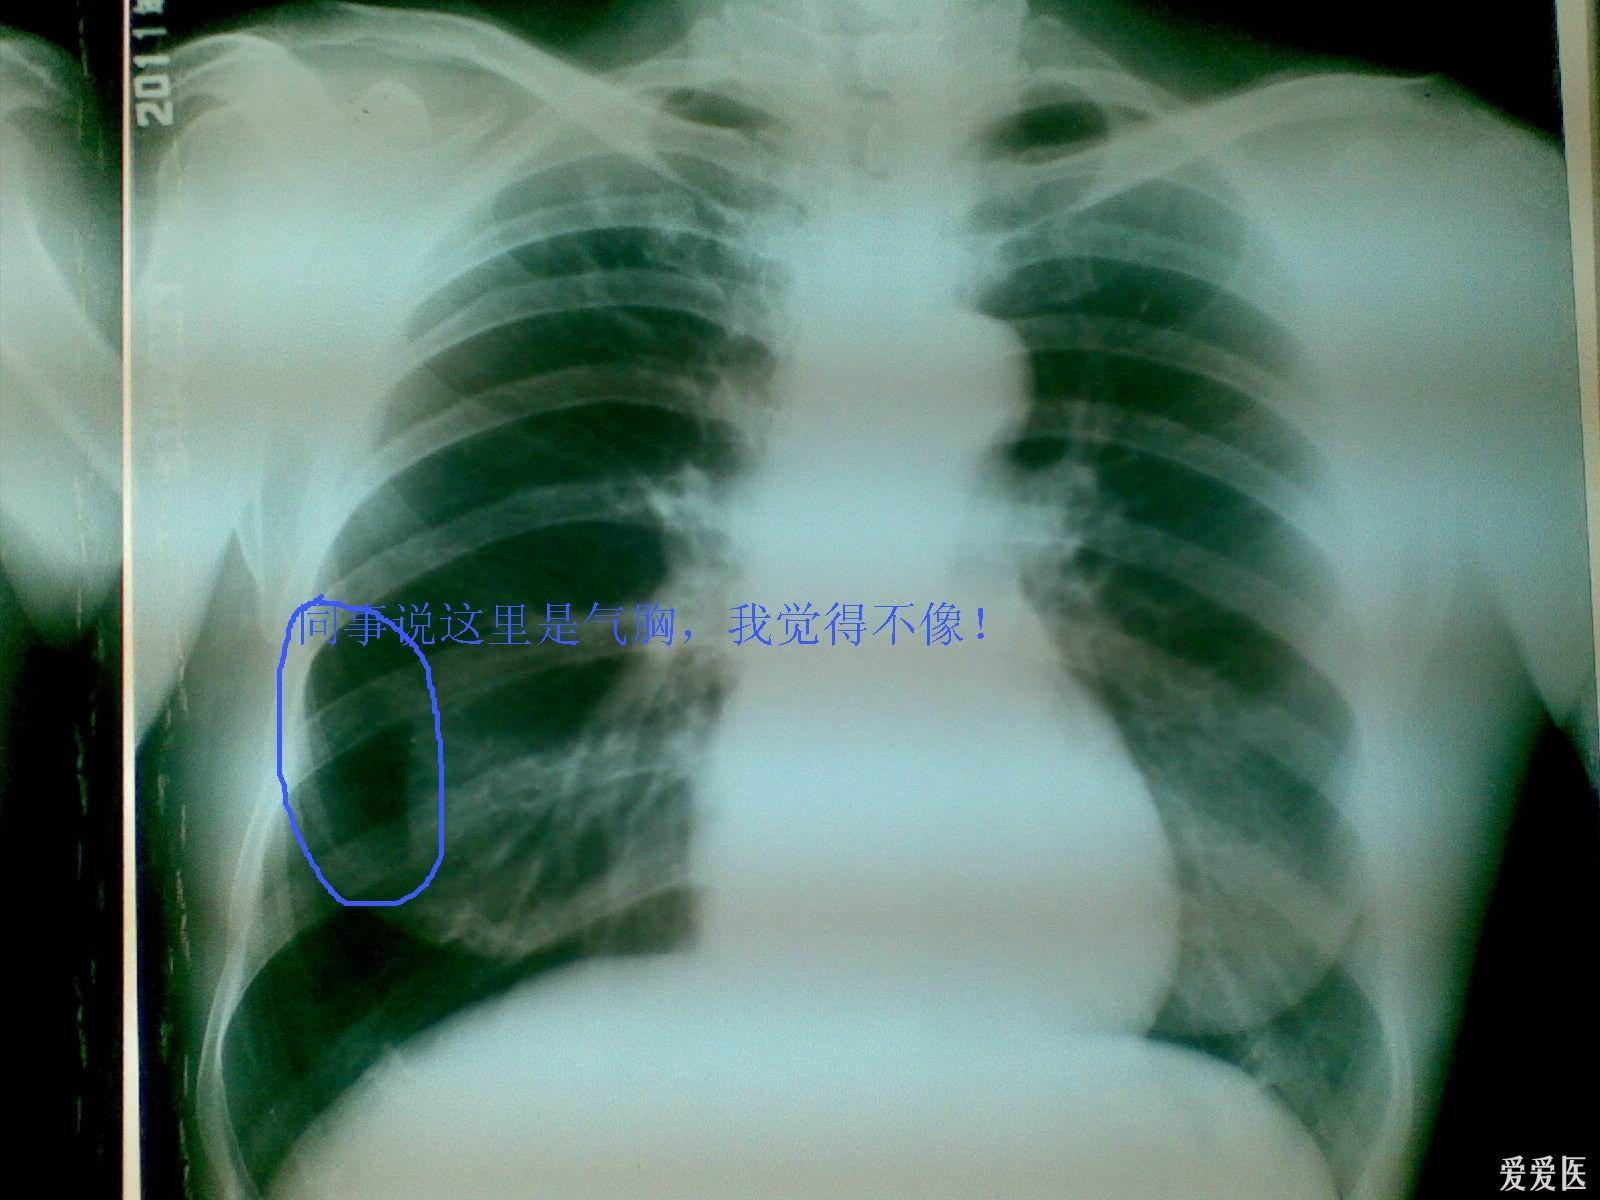 初步诊断:肺气肿.